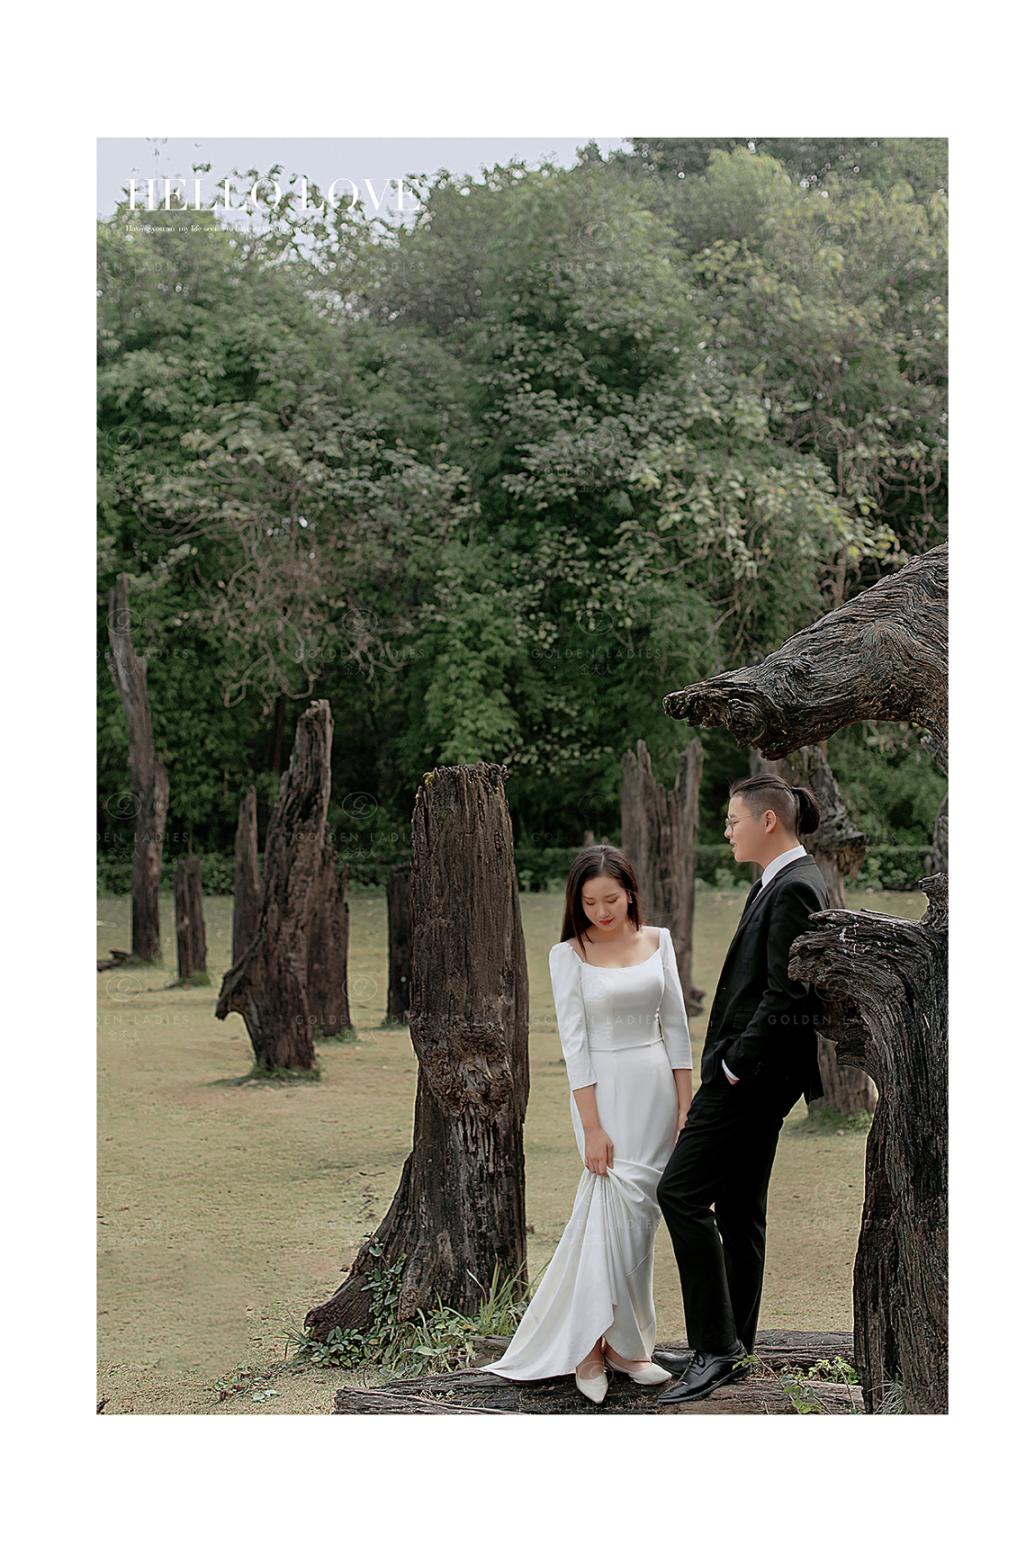 婚纱照教程分享丨在巨木阵如何将婚纱照拍出高级感?